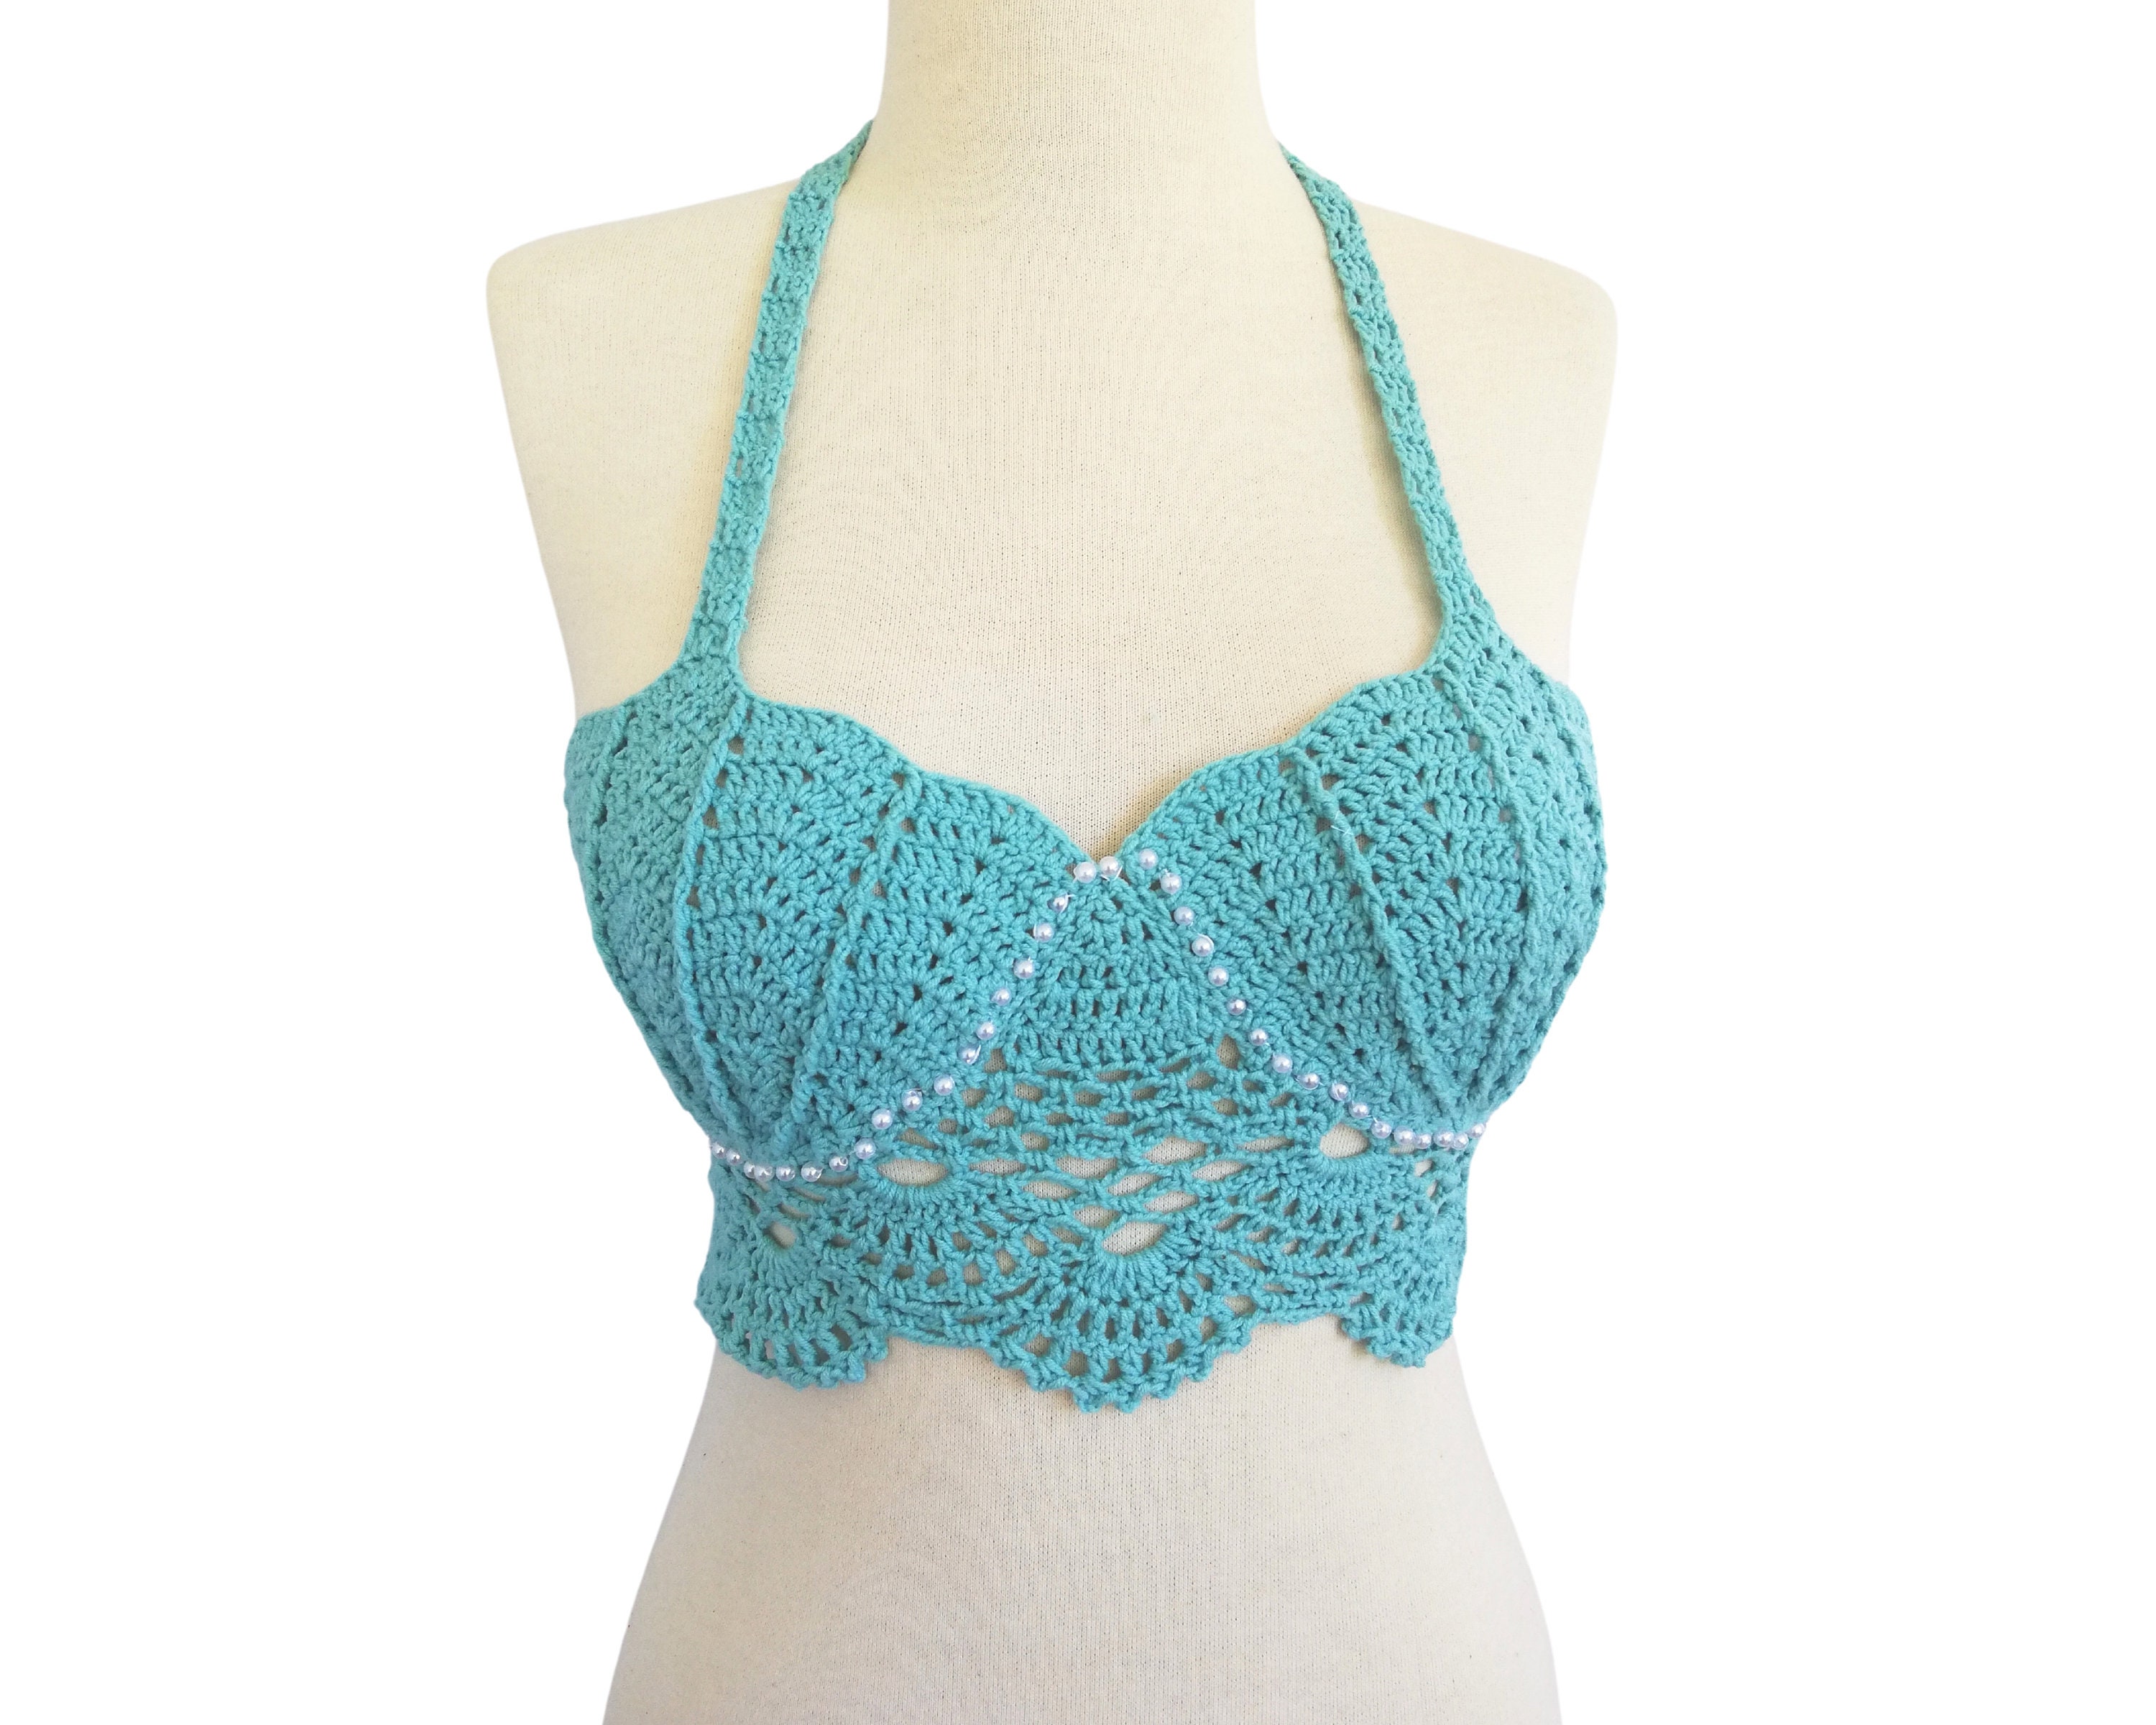 MERMAID Bralette - Crochet Pattern - Summer Top Crochet pattern by